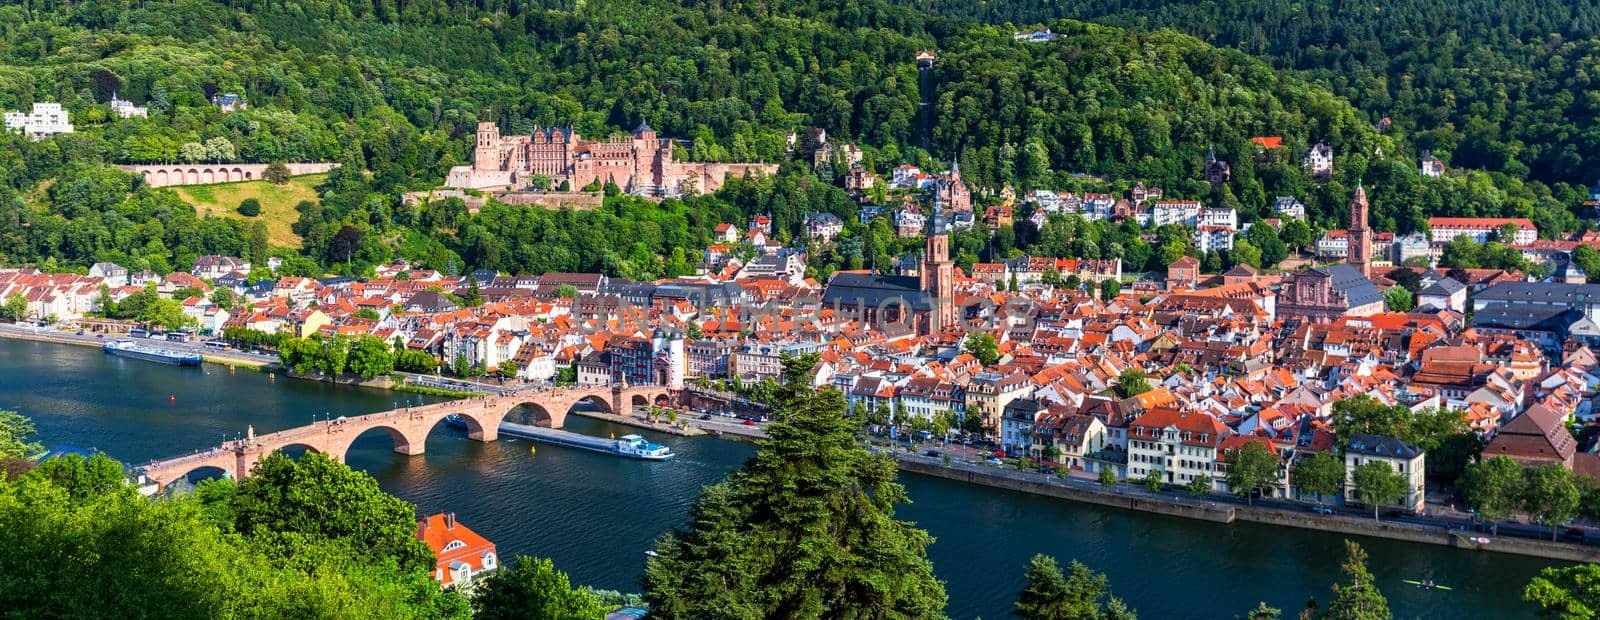 Landmark and beautiful Heidelberg town with Neckar river, Germany. Heidelberg town with the famous Karl Theodor old bridge and Heidelberg castle, Heidelberg, Germany.  by DaLiu